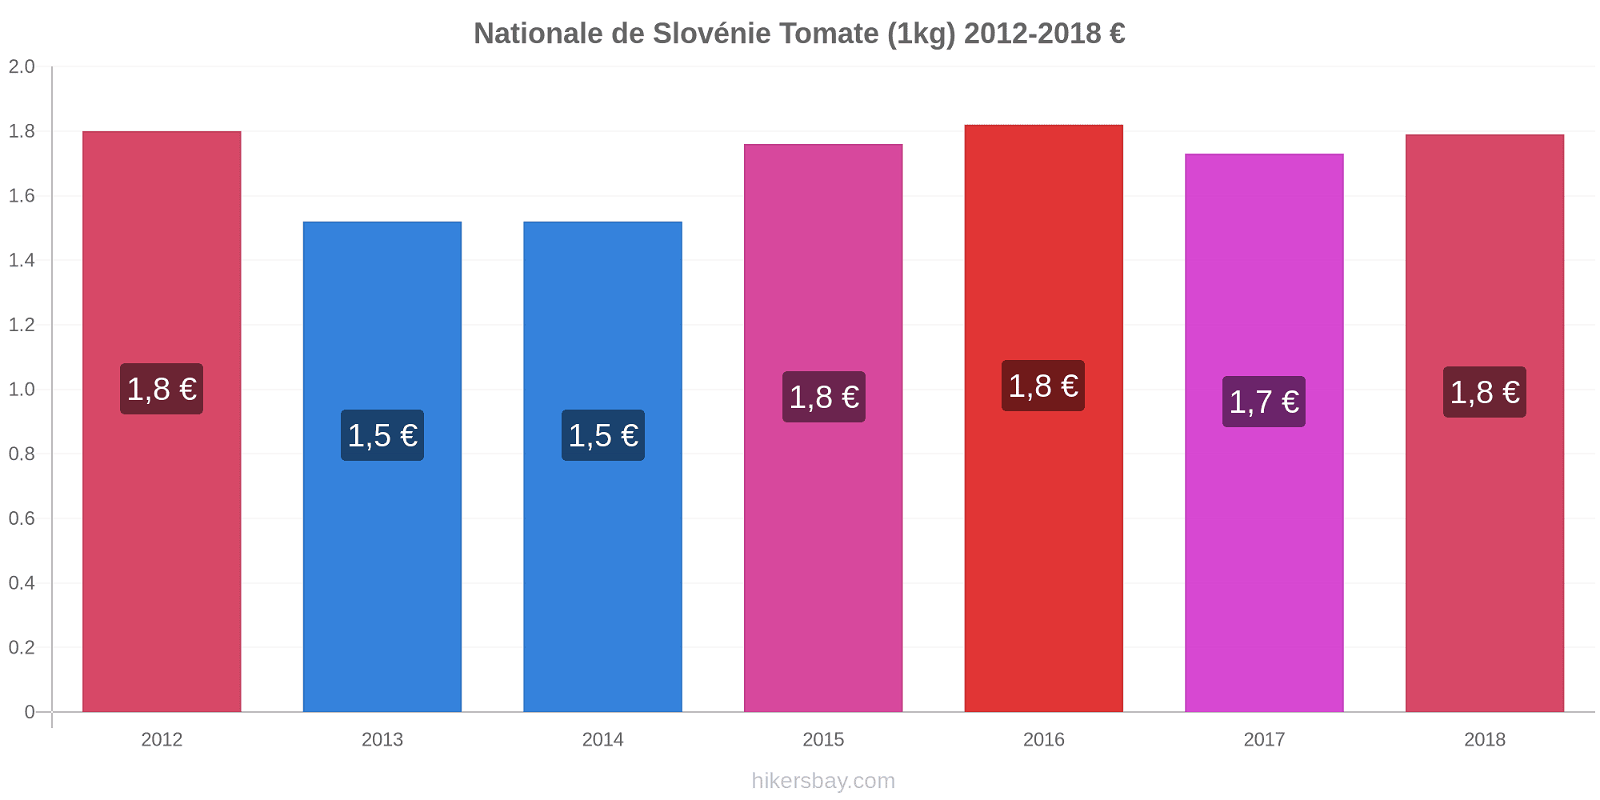 Nationale de Slovénie changements de prix Tomate (1kg) hikersbay.com